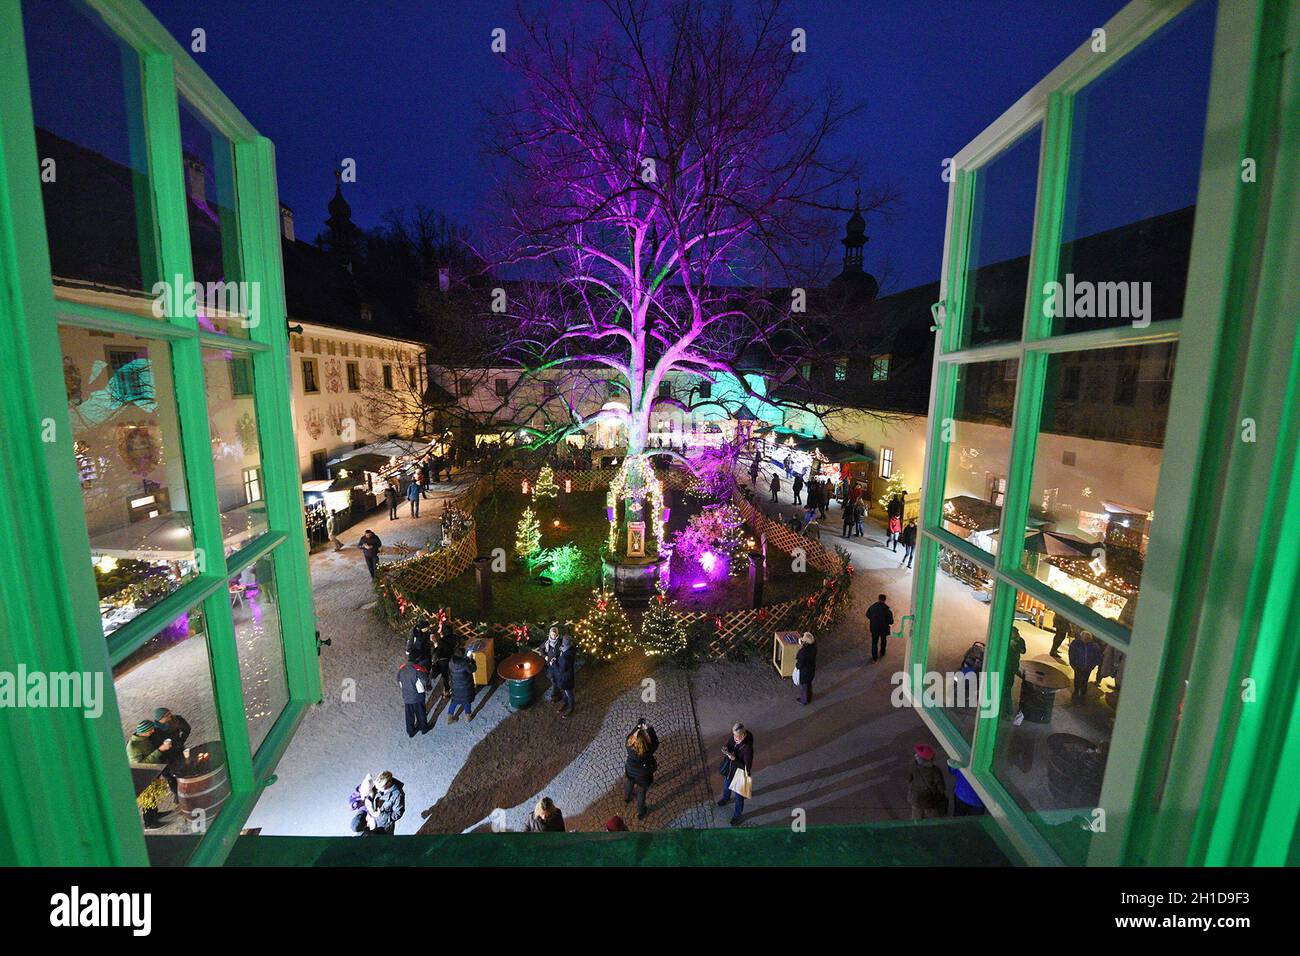 Der Weihnachtsmarkt „Schlösseradvent“ am Traunsee in Gmunden (Oberösterreich, Österreich) ist einer der schönsten Märkte in Österreich. - The „Schlöss Stock Photo